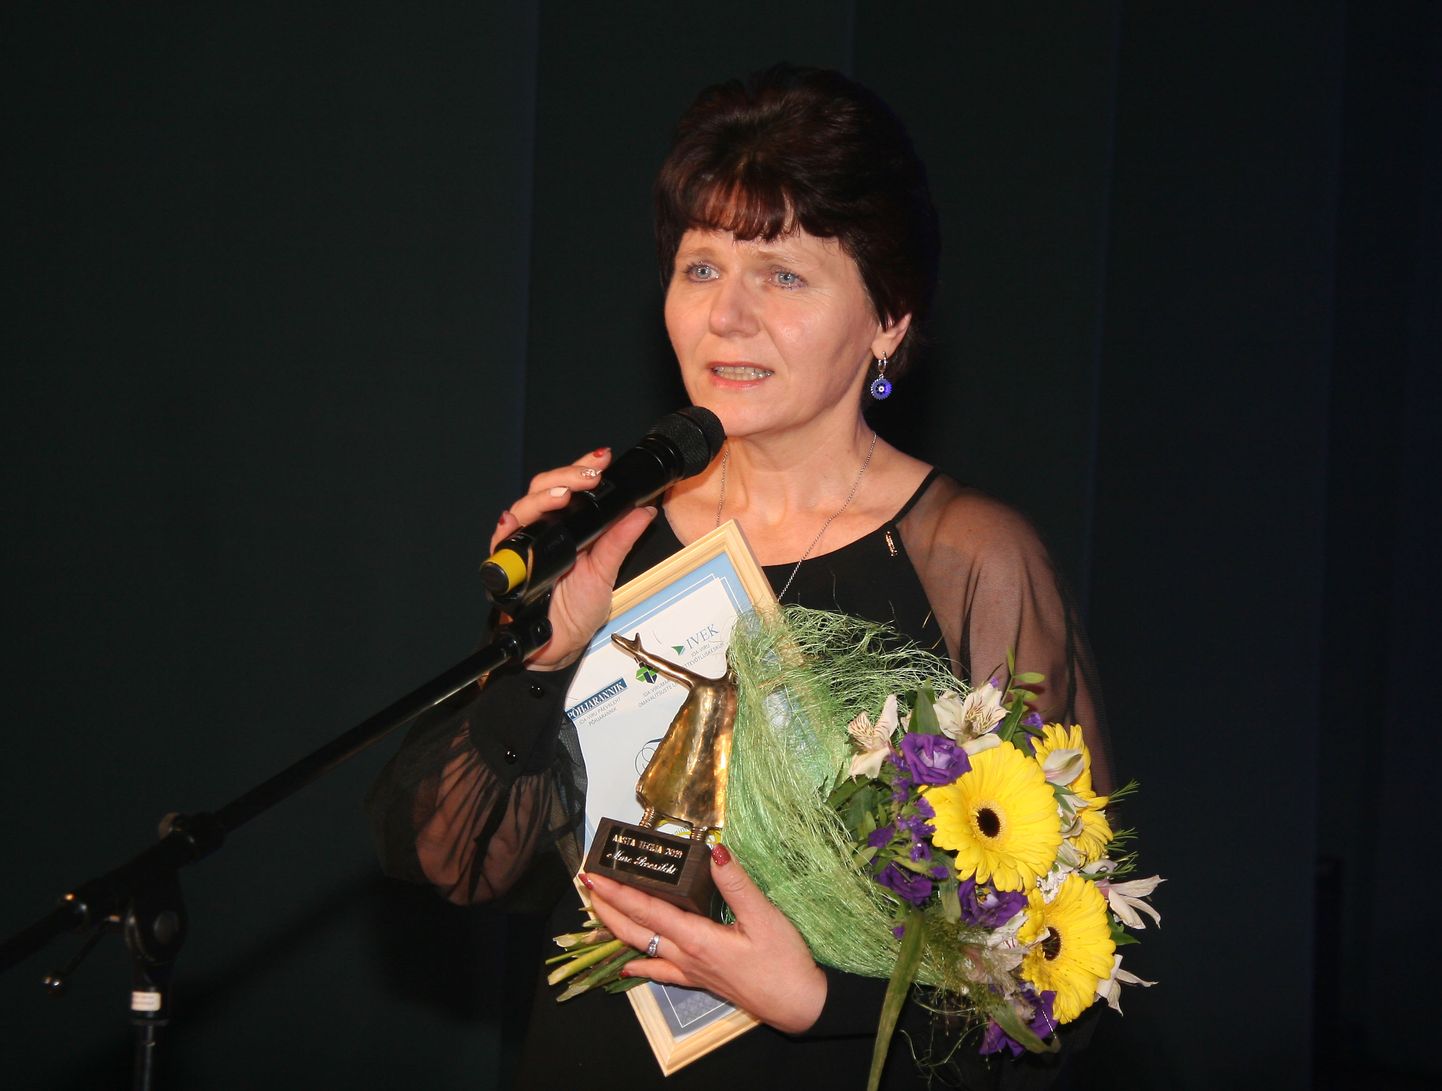 Титула "Деятель года Ида-Вирумаа - 2019" была удостоена директор Вирумааского колледжа Таллиннского технического университета, а также руководитель местной образовательной жизни и общественного движения Маре Роозилехт.